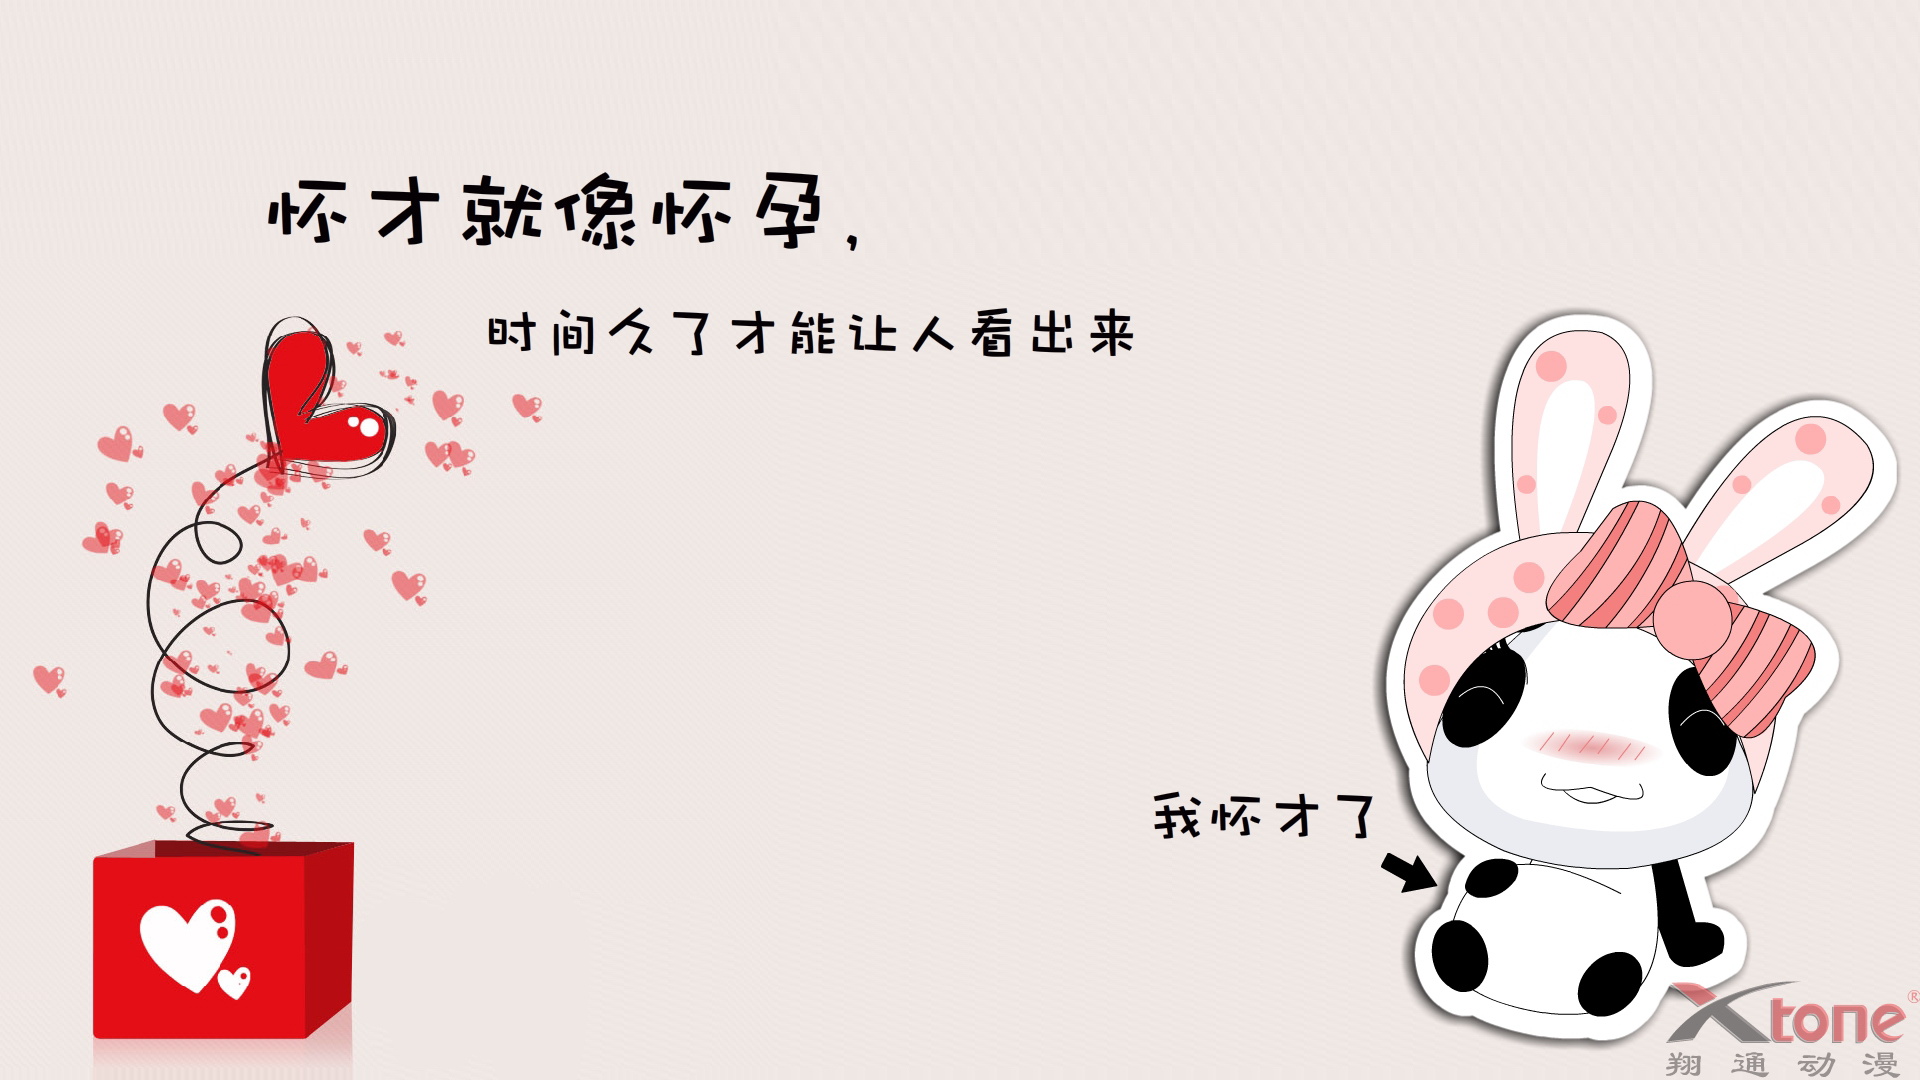 可爱熊猫娃娃卡通搞笑文字图片手机壁纸_综合图库 - 动态图库网